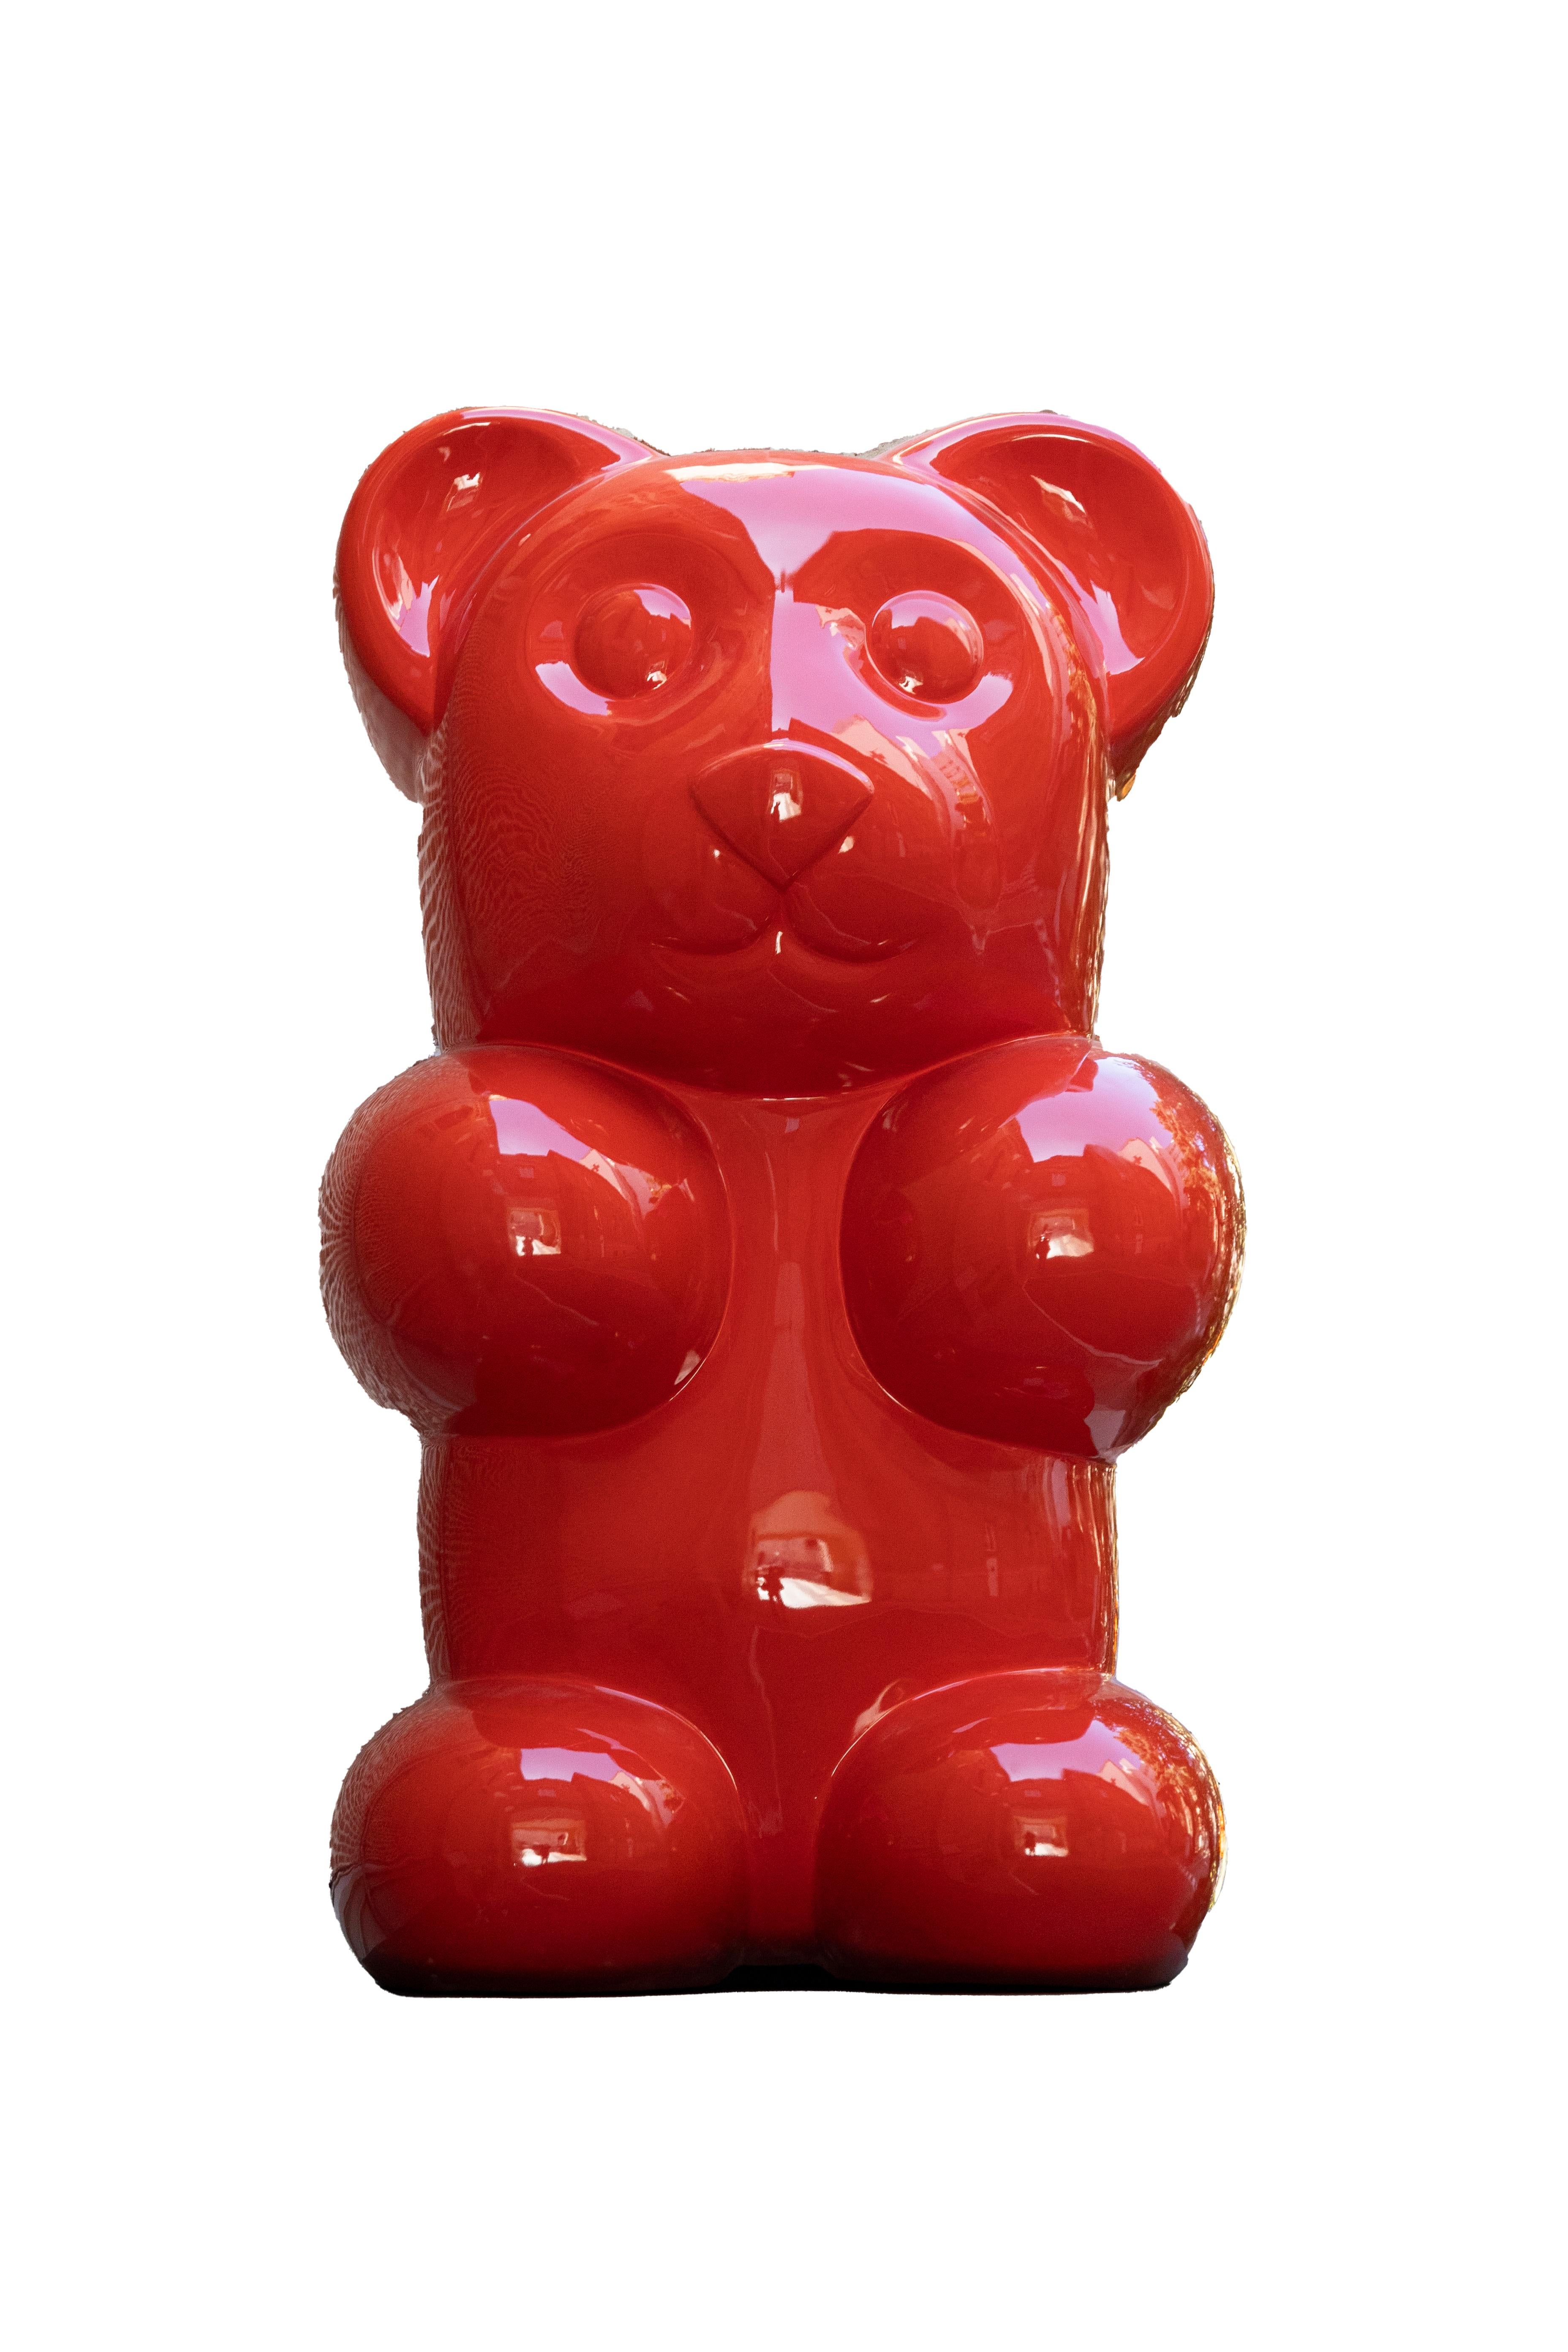 gummy bear art sculpture